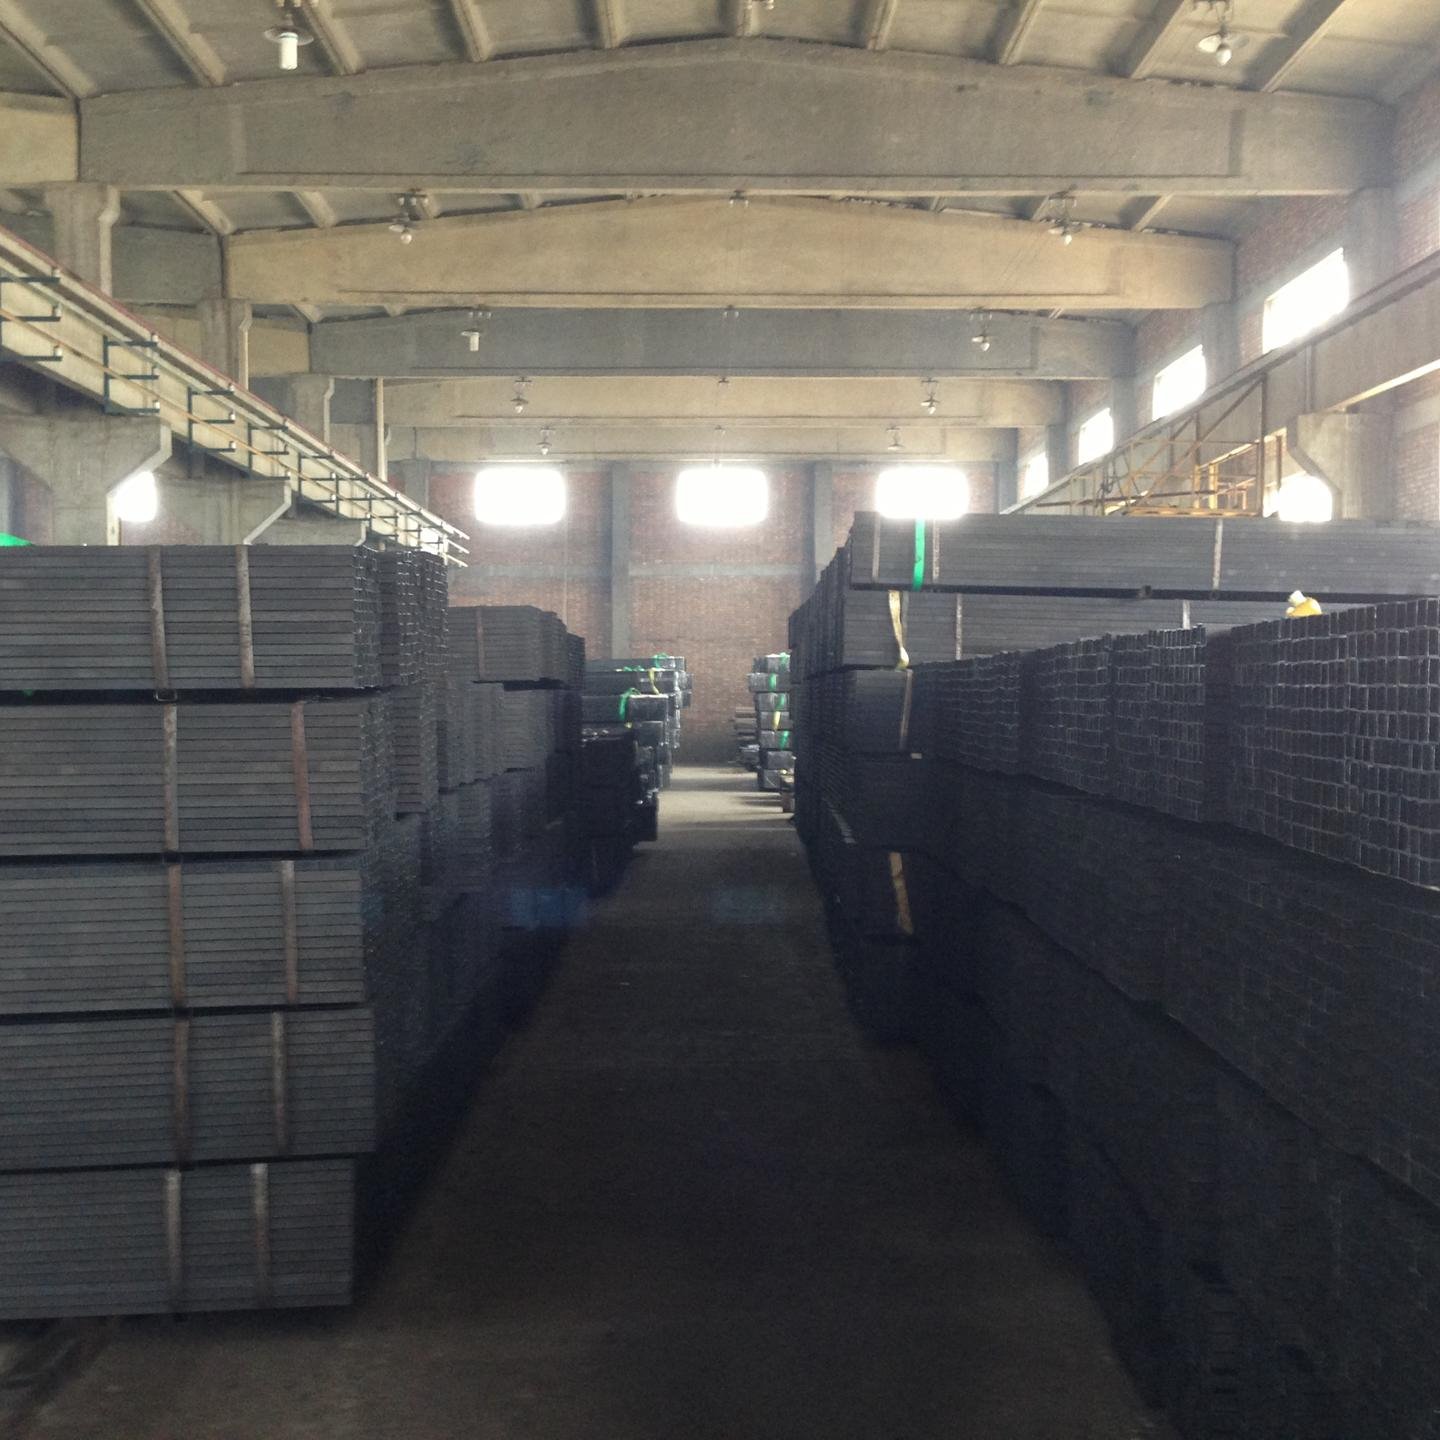 天津腾越钢铁有限公司主营销售 黑方管 焊接方管 涂油方管 6060 Q235材质  可根据产品标准及客户需求定做